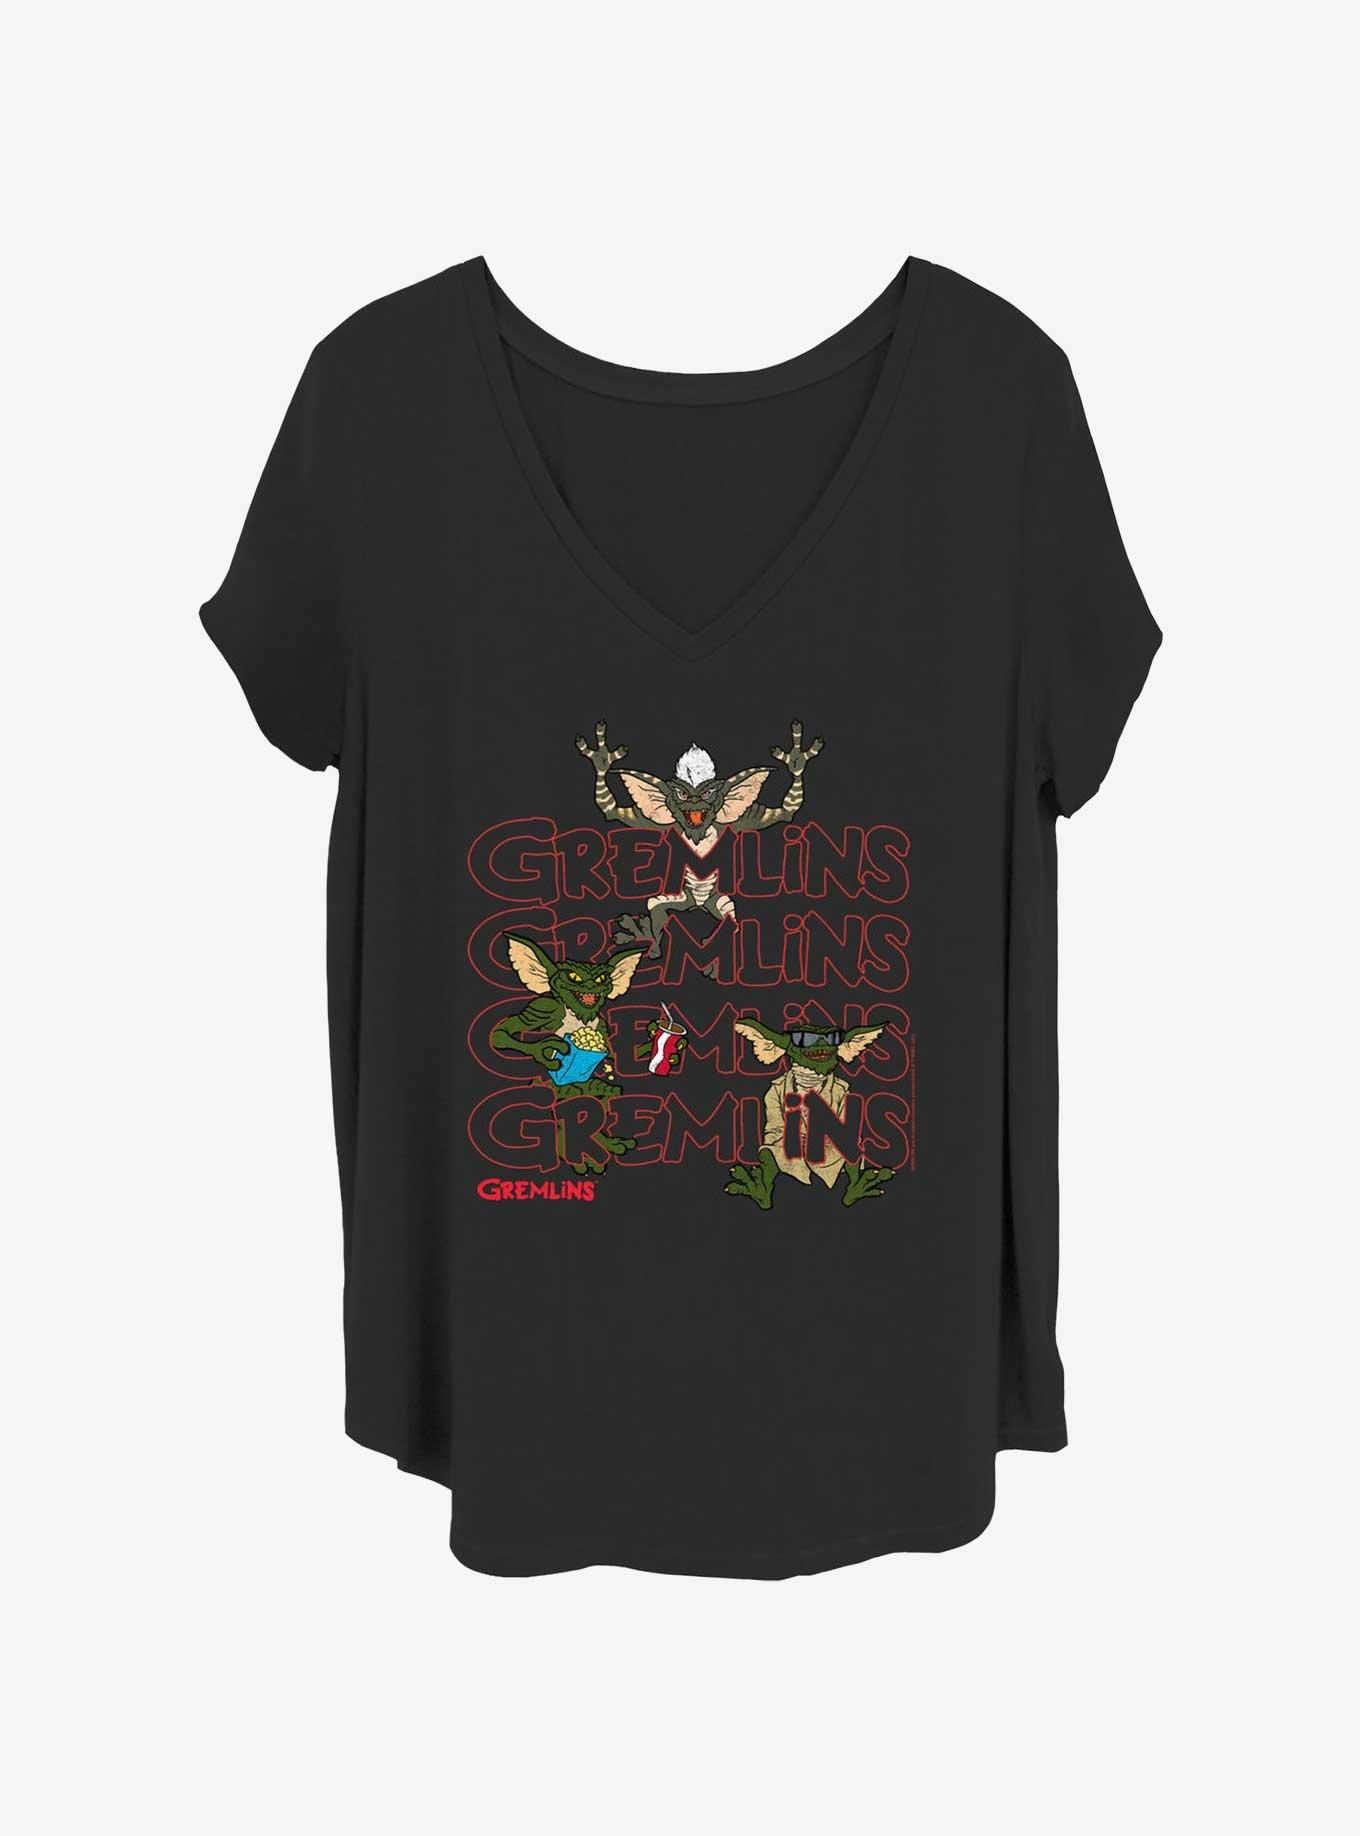 Gremlins Stack Girls T-Shirt Plus